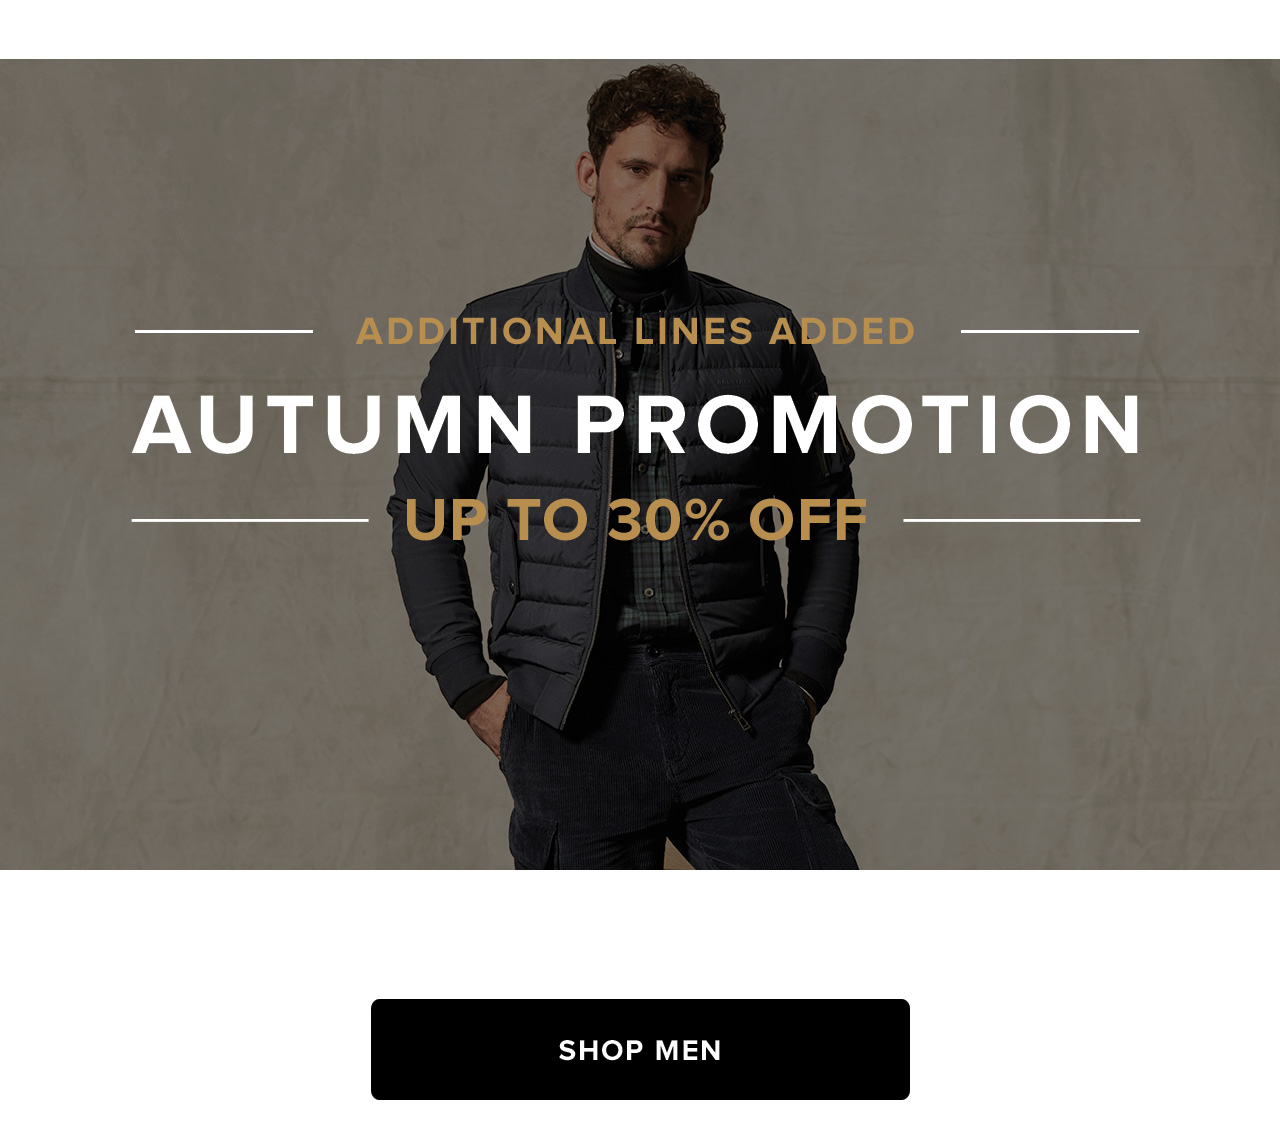 Autumn Promotion